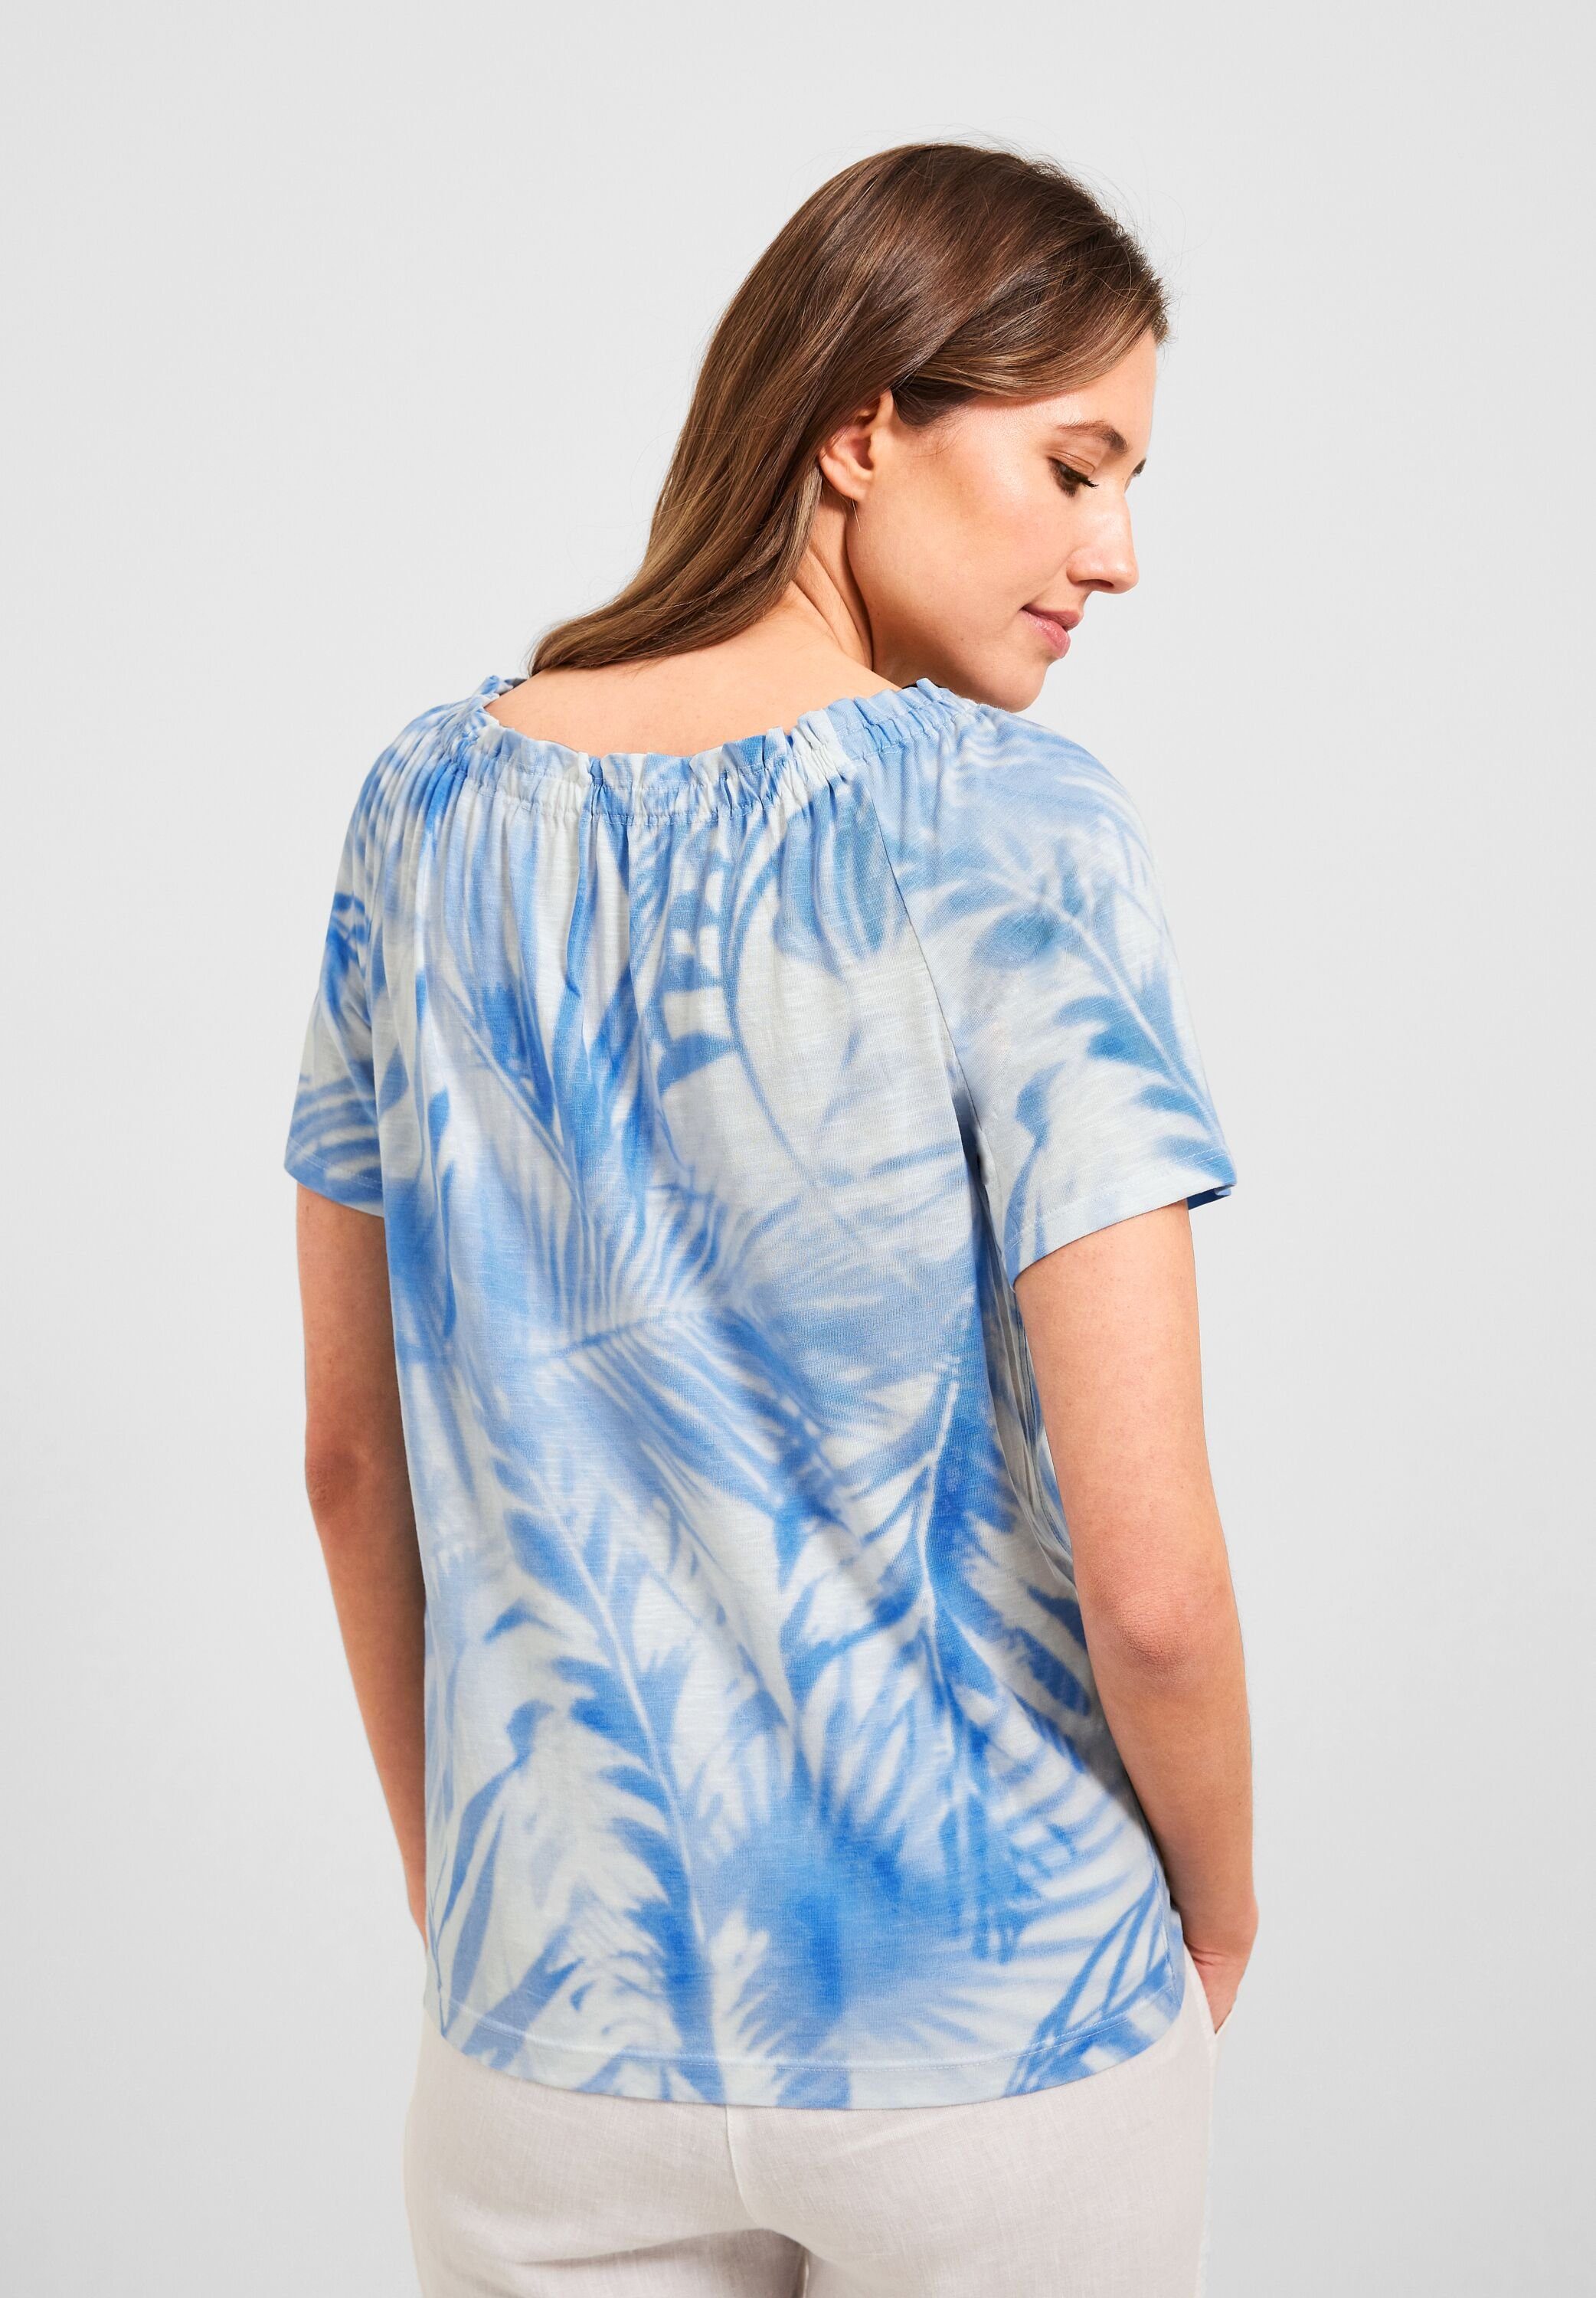 Cecil T-Shirt aus softem Materialmix, Carmen Ausschnitt